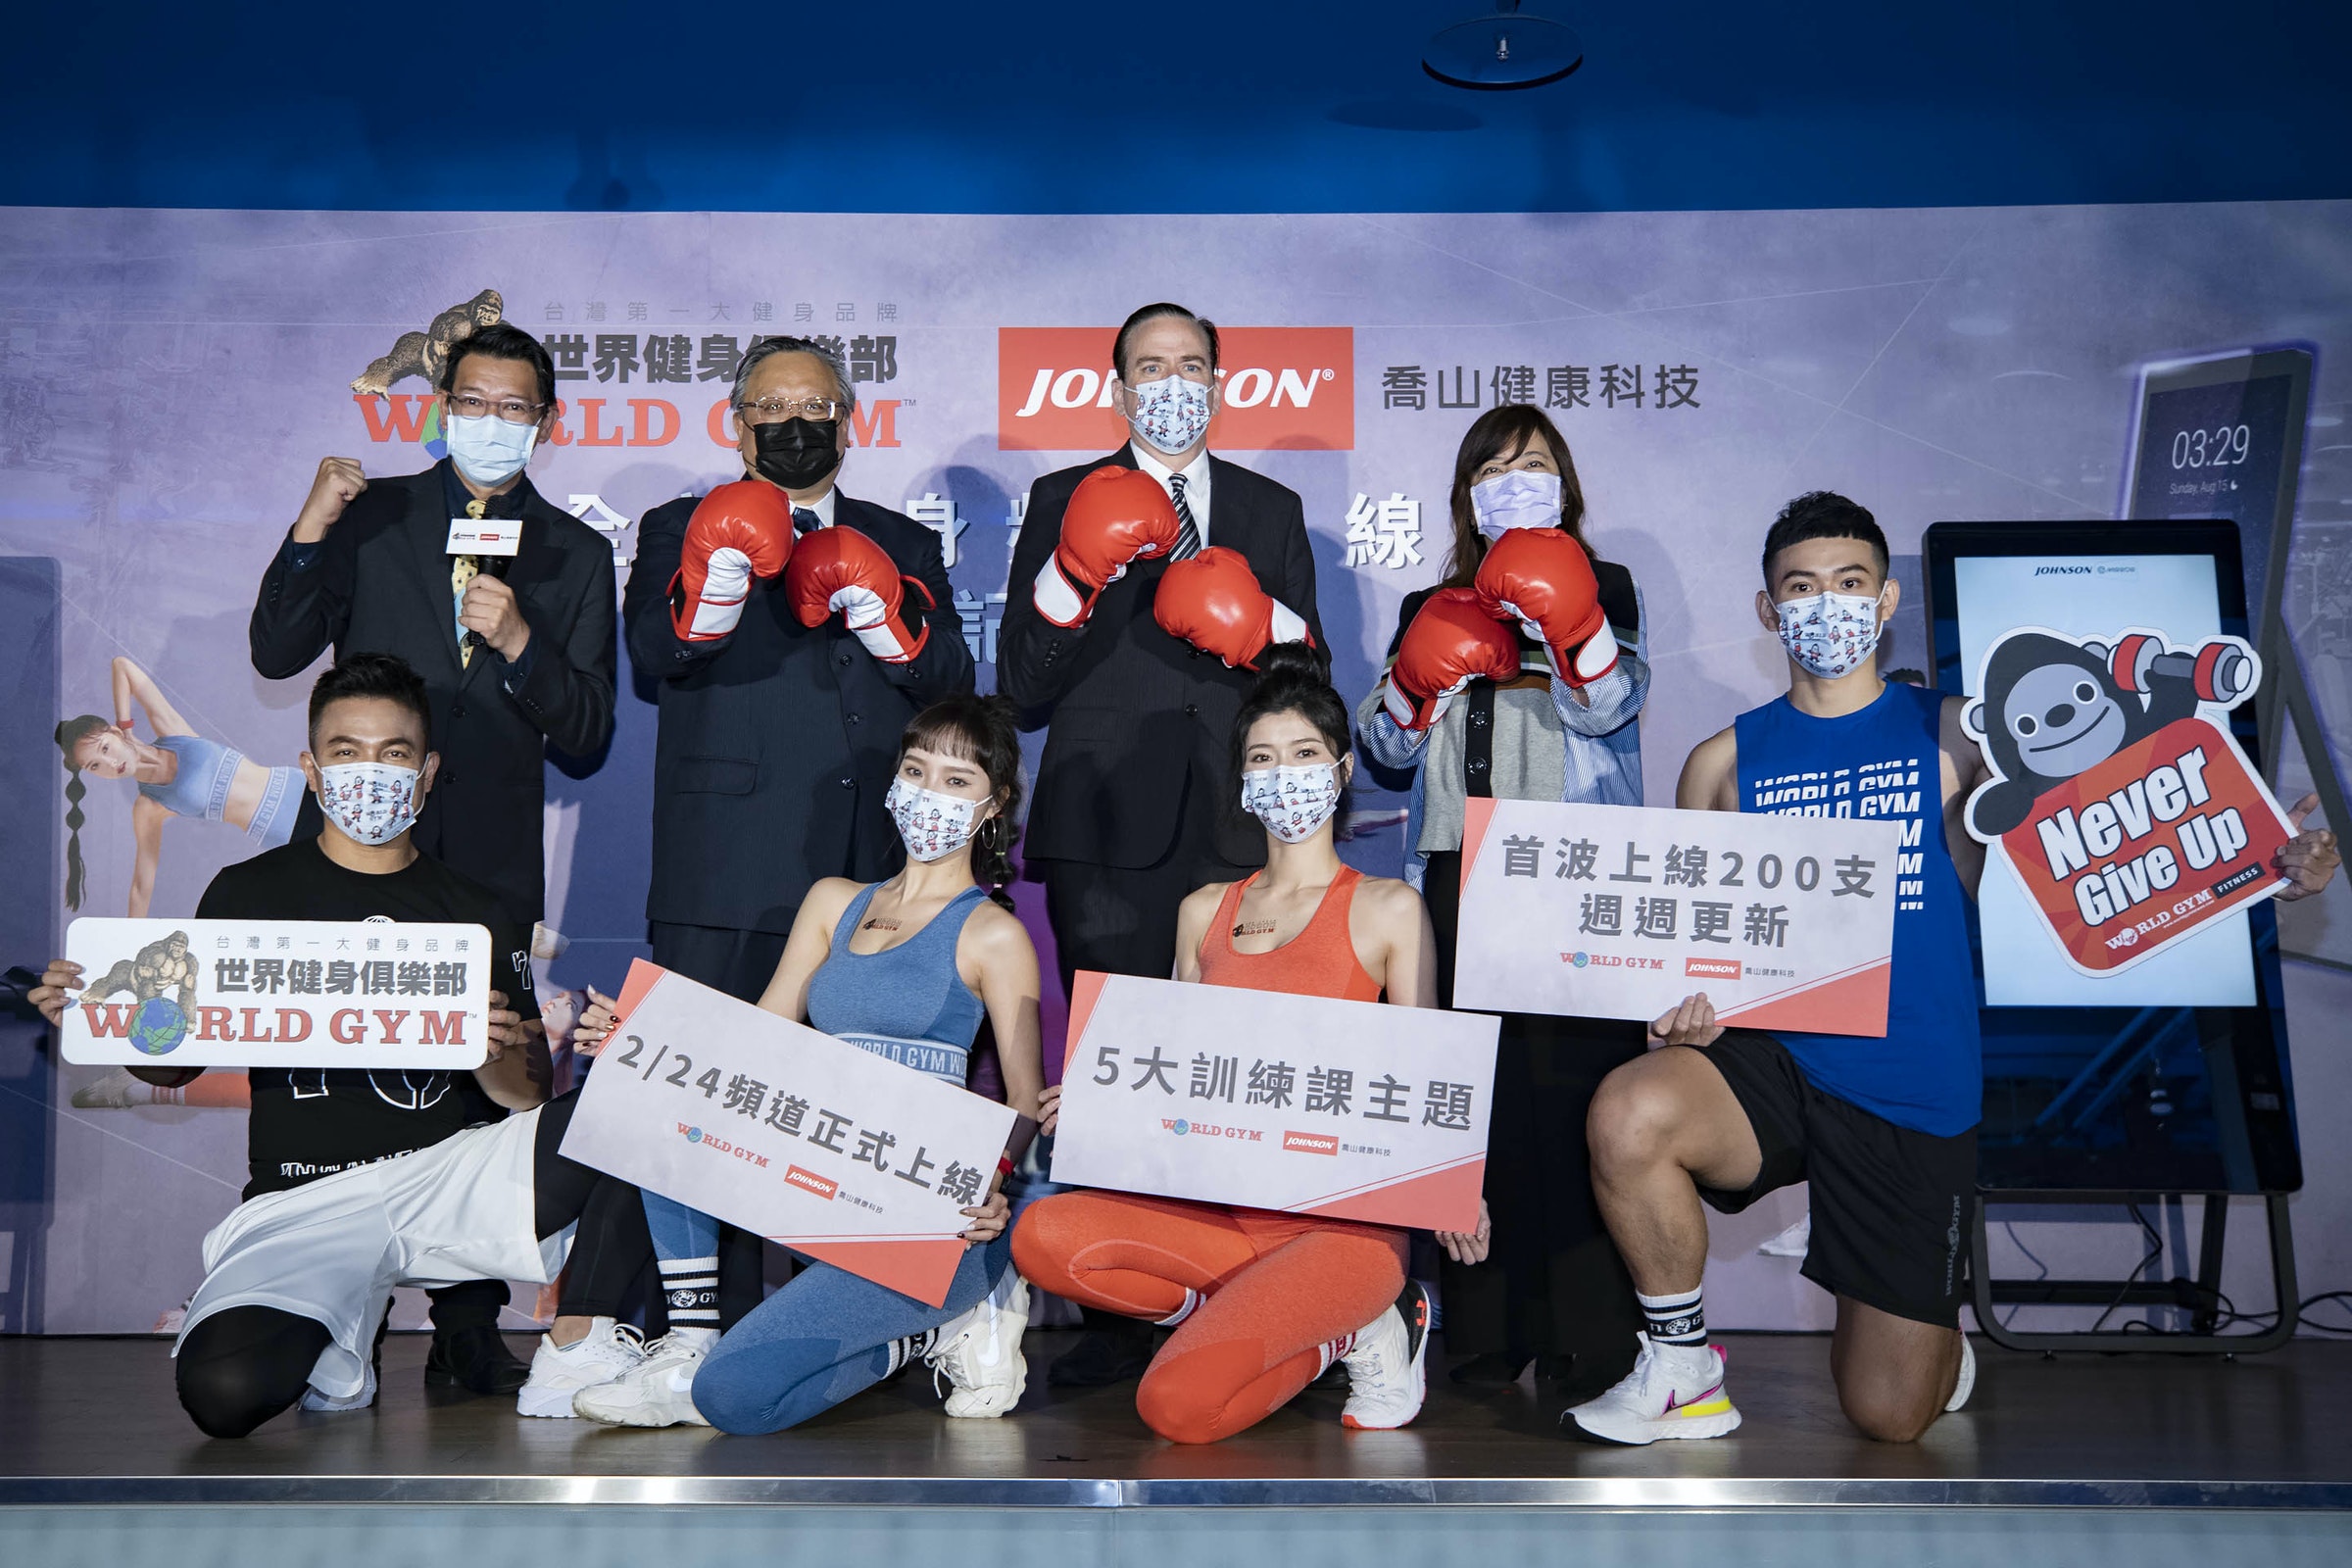 照片中提到了台灣第一大健身品牌、世界健身部、WESLLD C M，包含了社交群、約翰遜健康科技、世界體育館、行使、約翰遜@鏡子